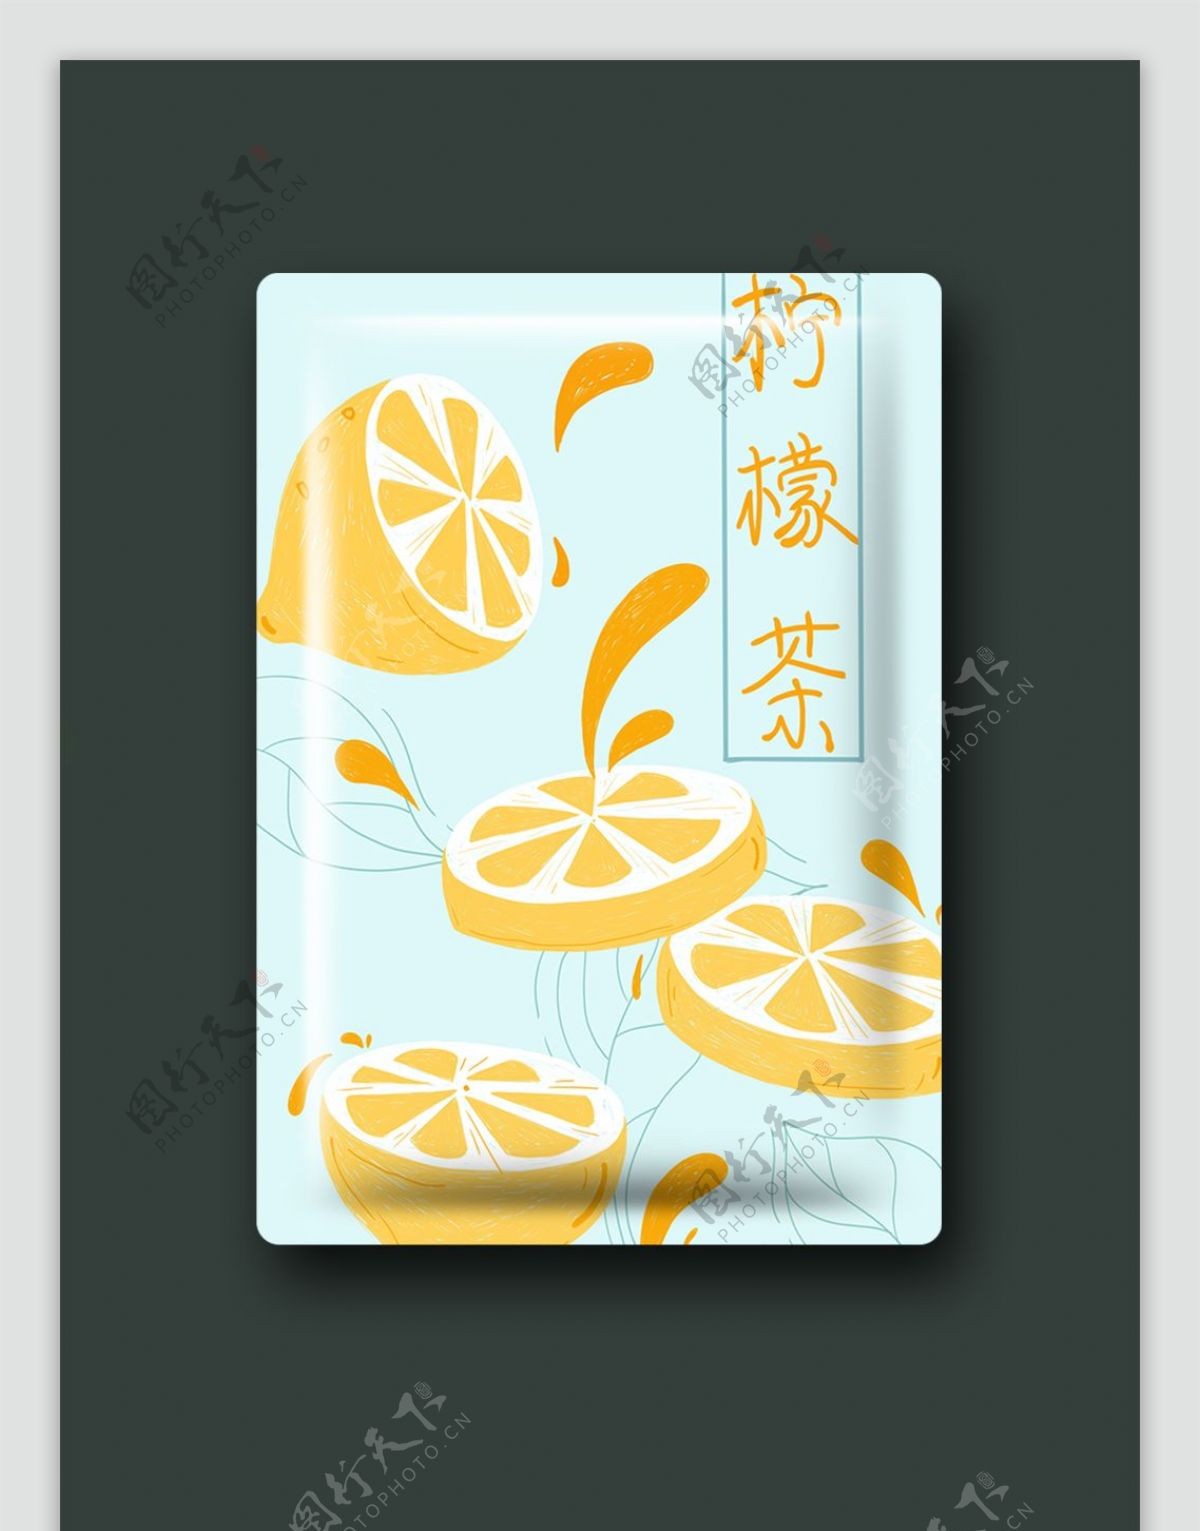 柠檬茶插画包装清新